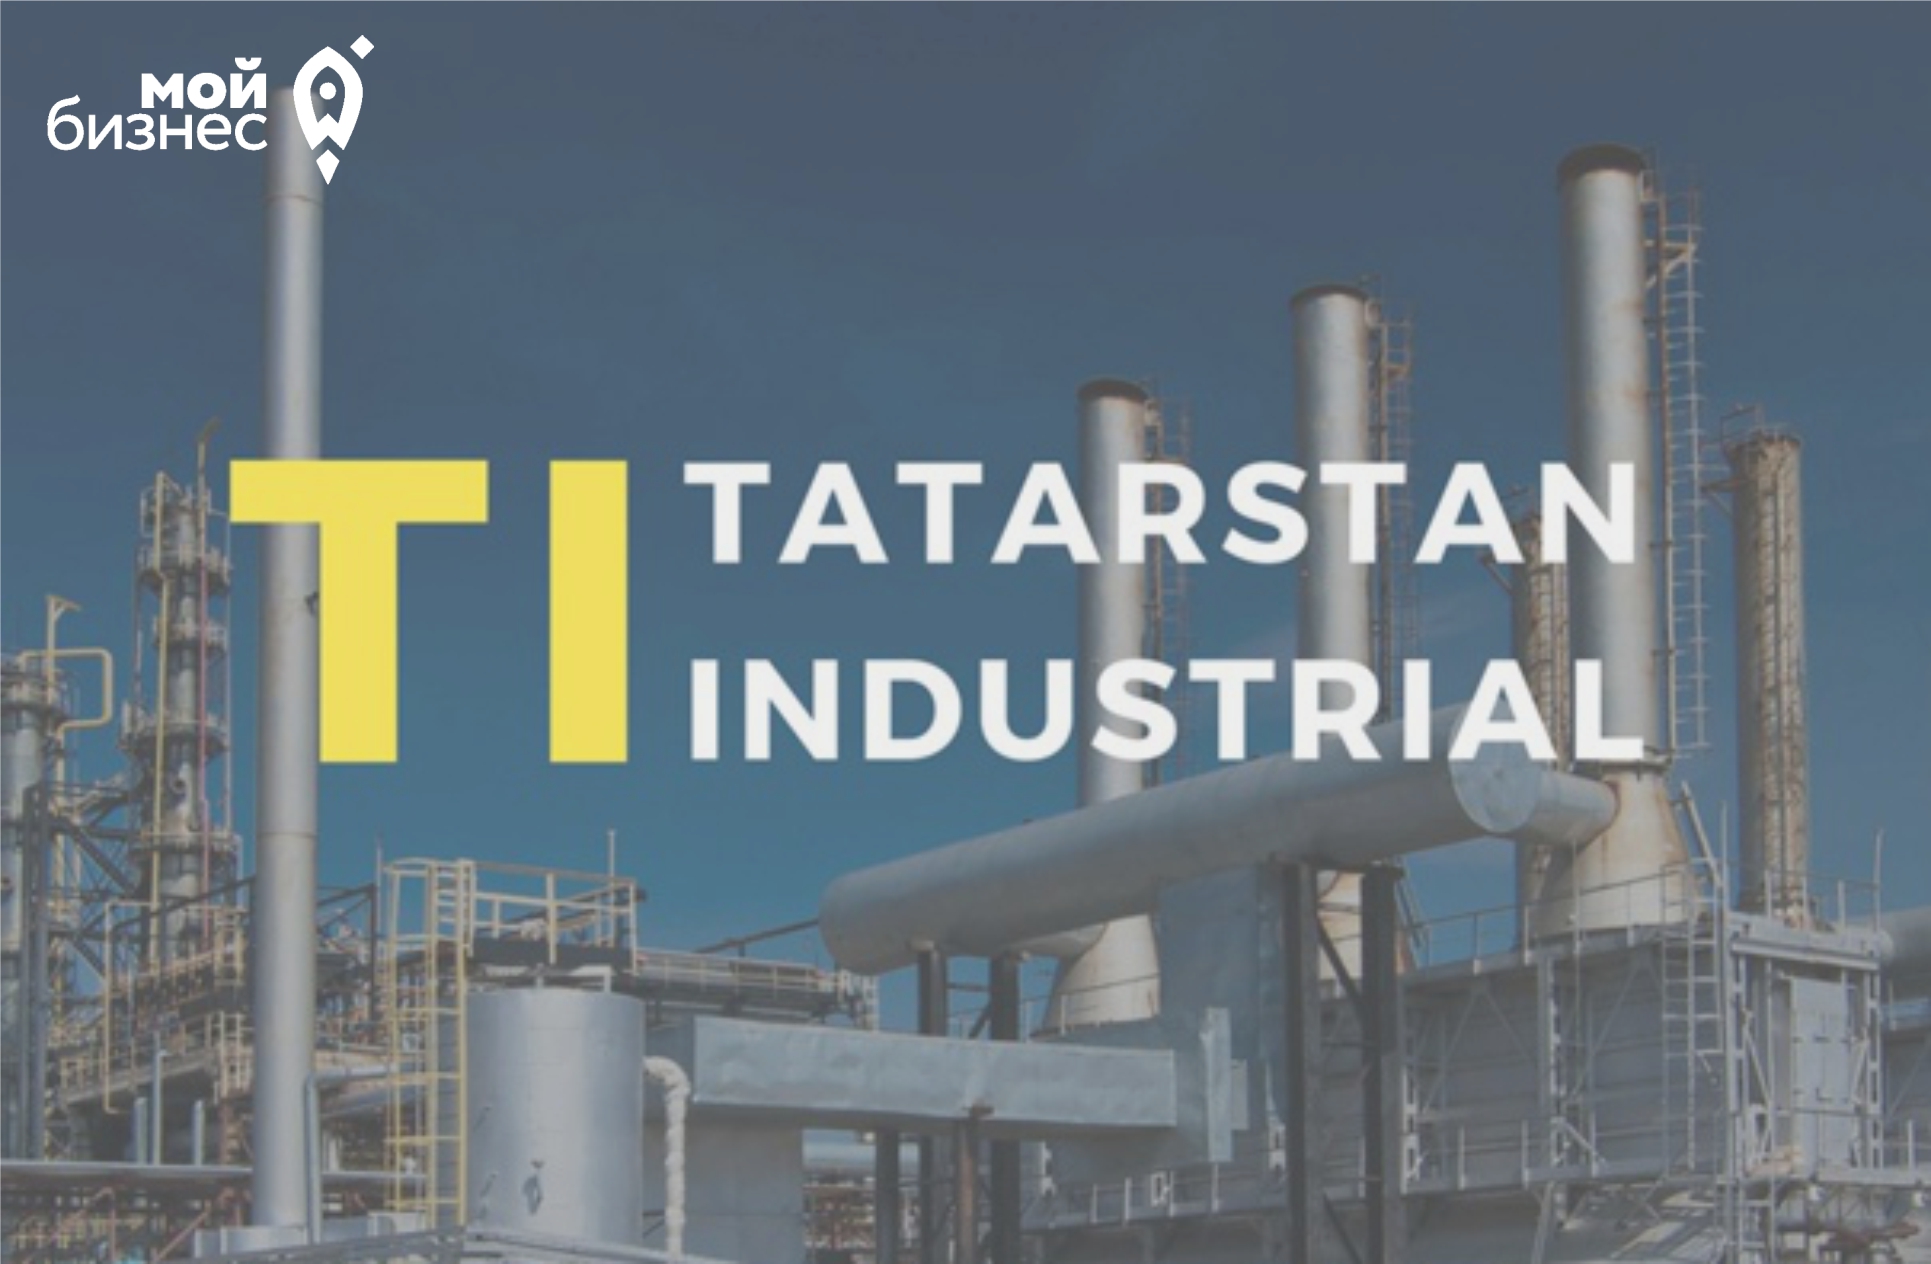 Приглашаем принять участие в VIII Международном Машиностроительном кластерном форуме TATARSTAN INDUSTRIAL DAYS